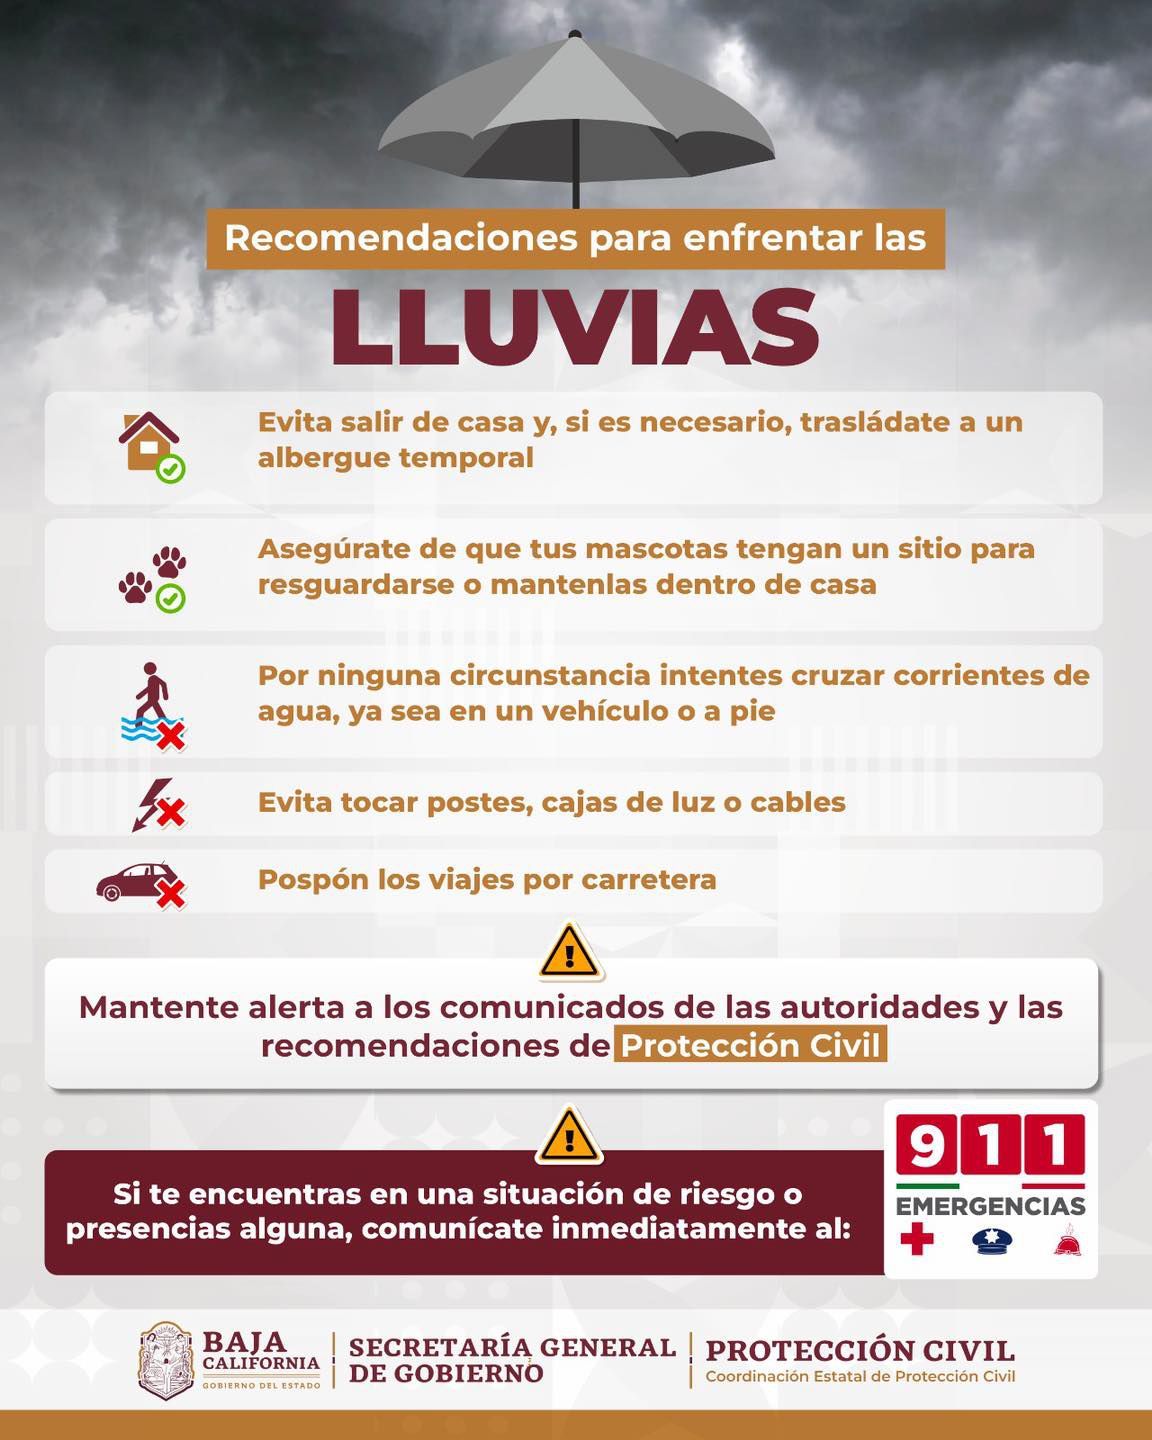 Protección Civil de Baja California presentó recomendaciones para enfrentar las lluvias.